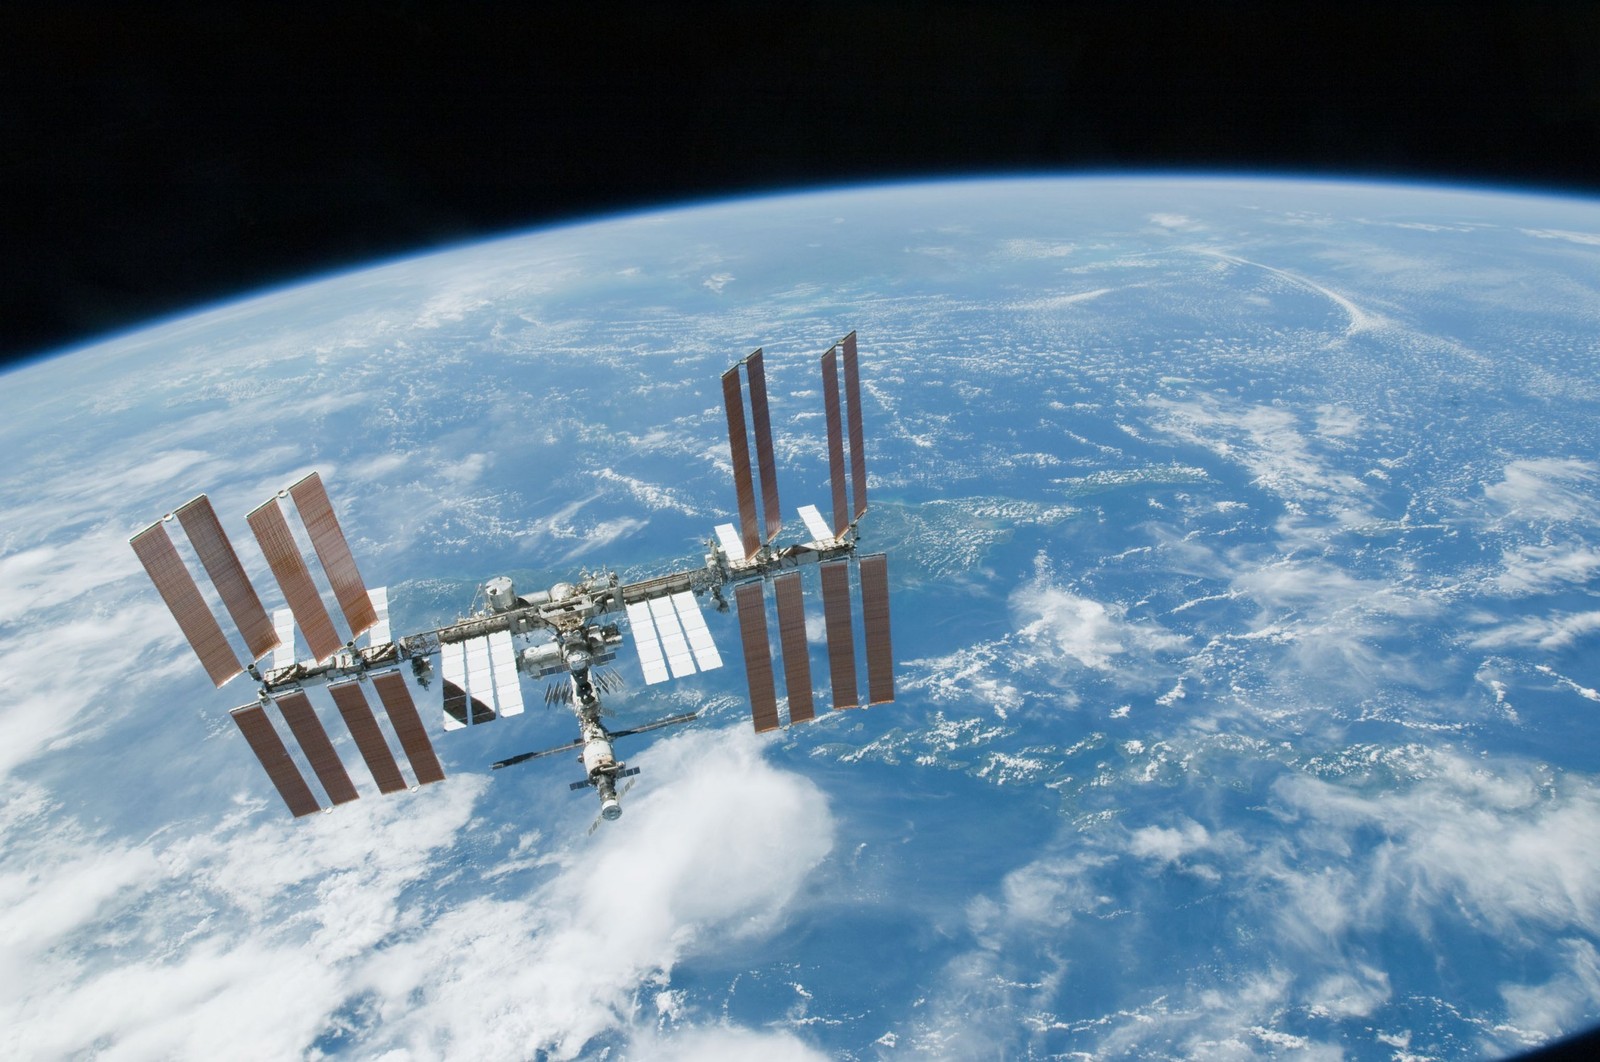 Międzynardowoa Stacja Kosmiczna Kosmiczna jest na orbicie okołoziemskiej od 1998 roku (fot. ESA)
